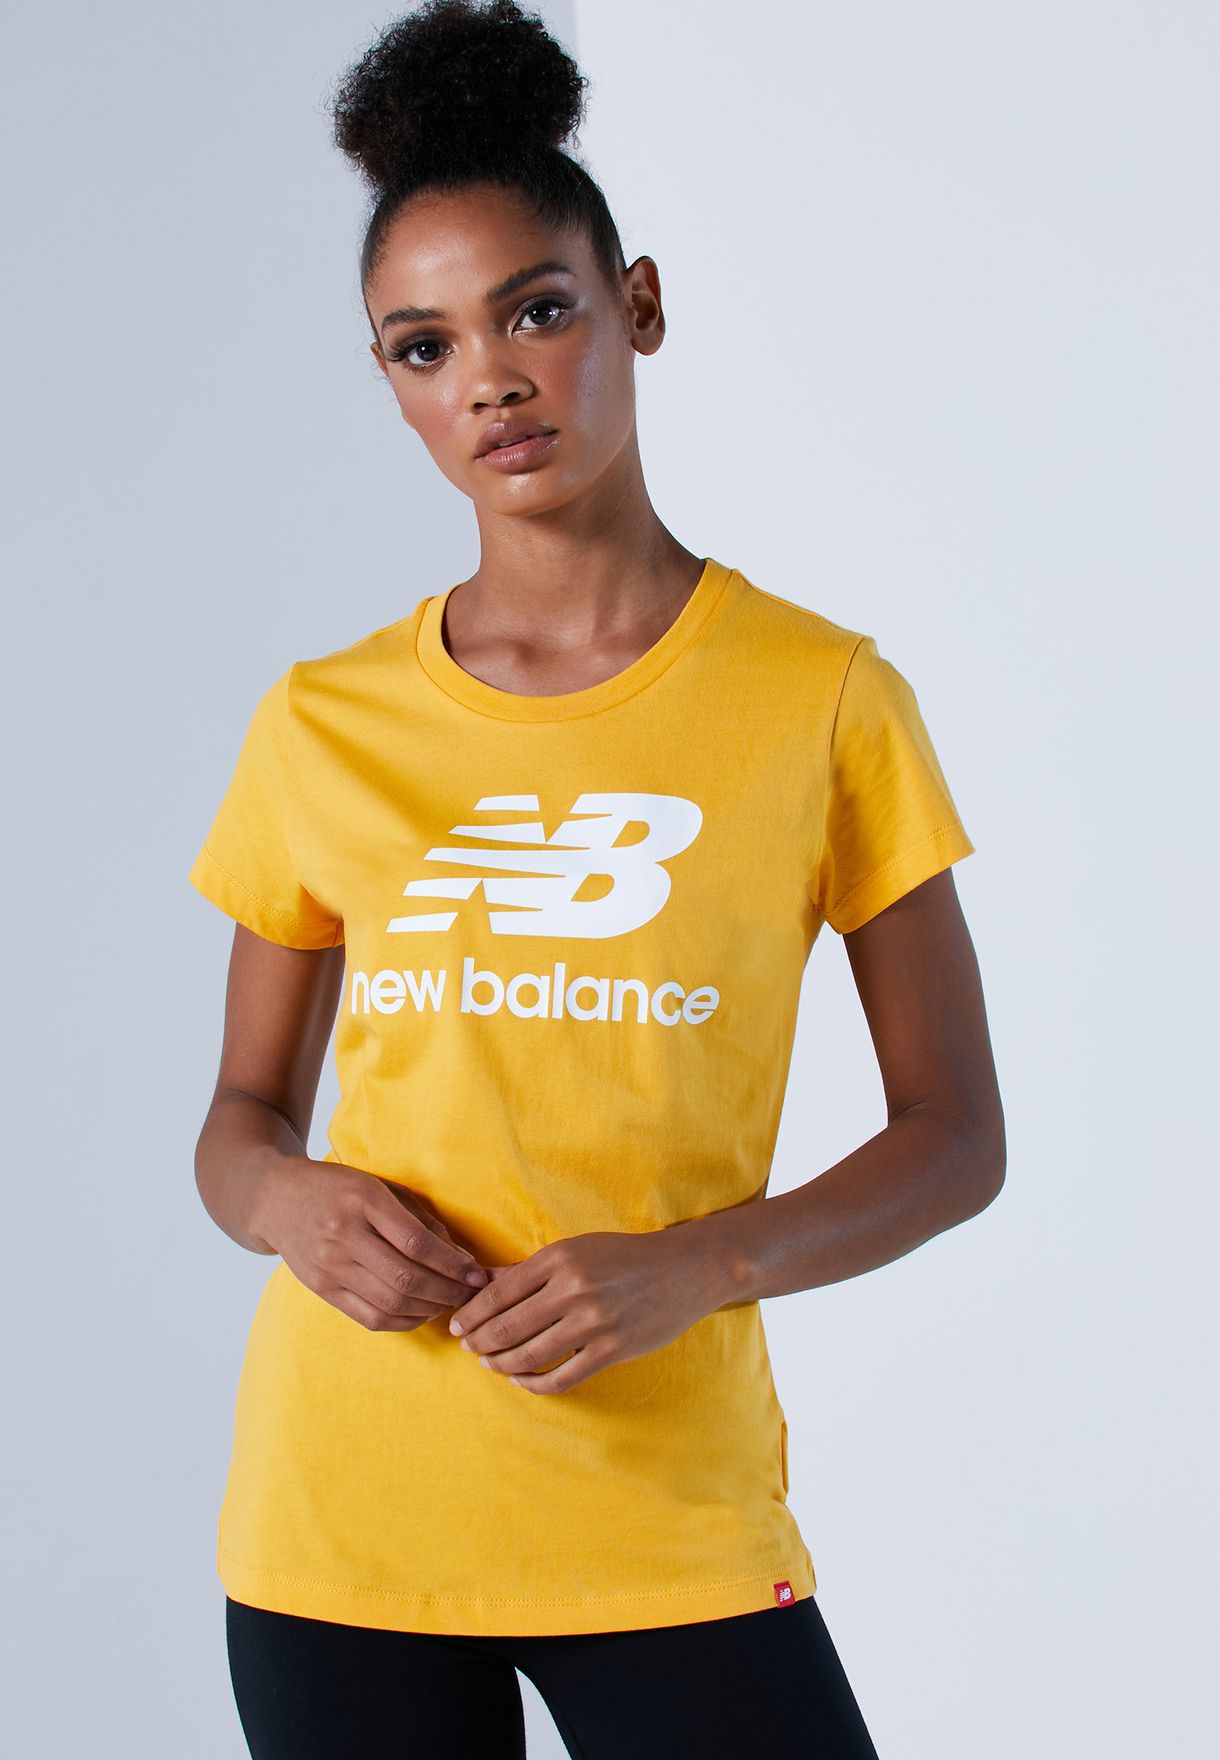 new balance shirts womens